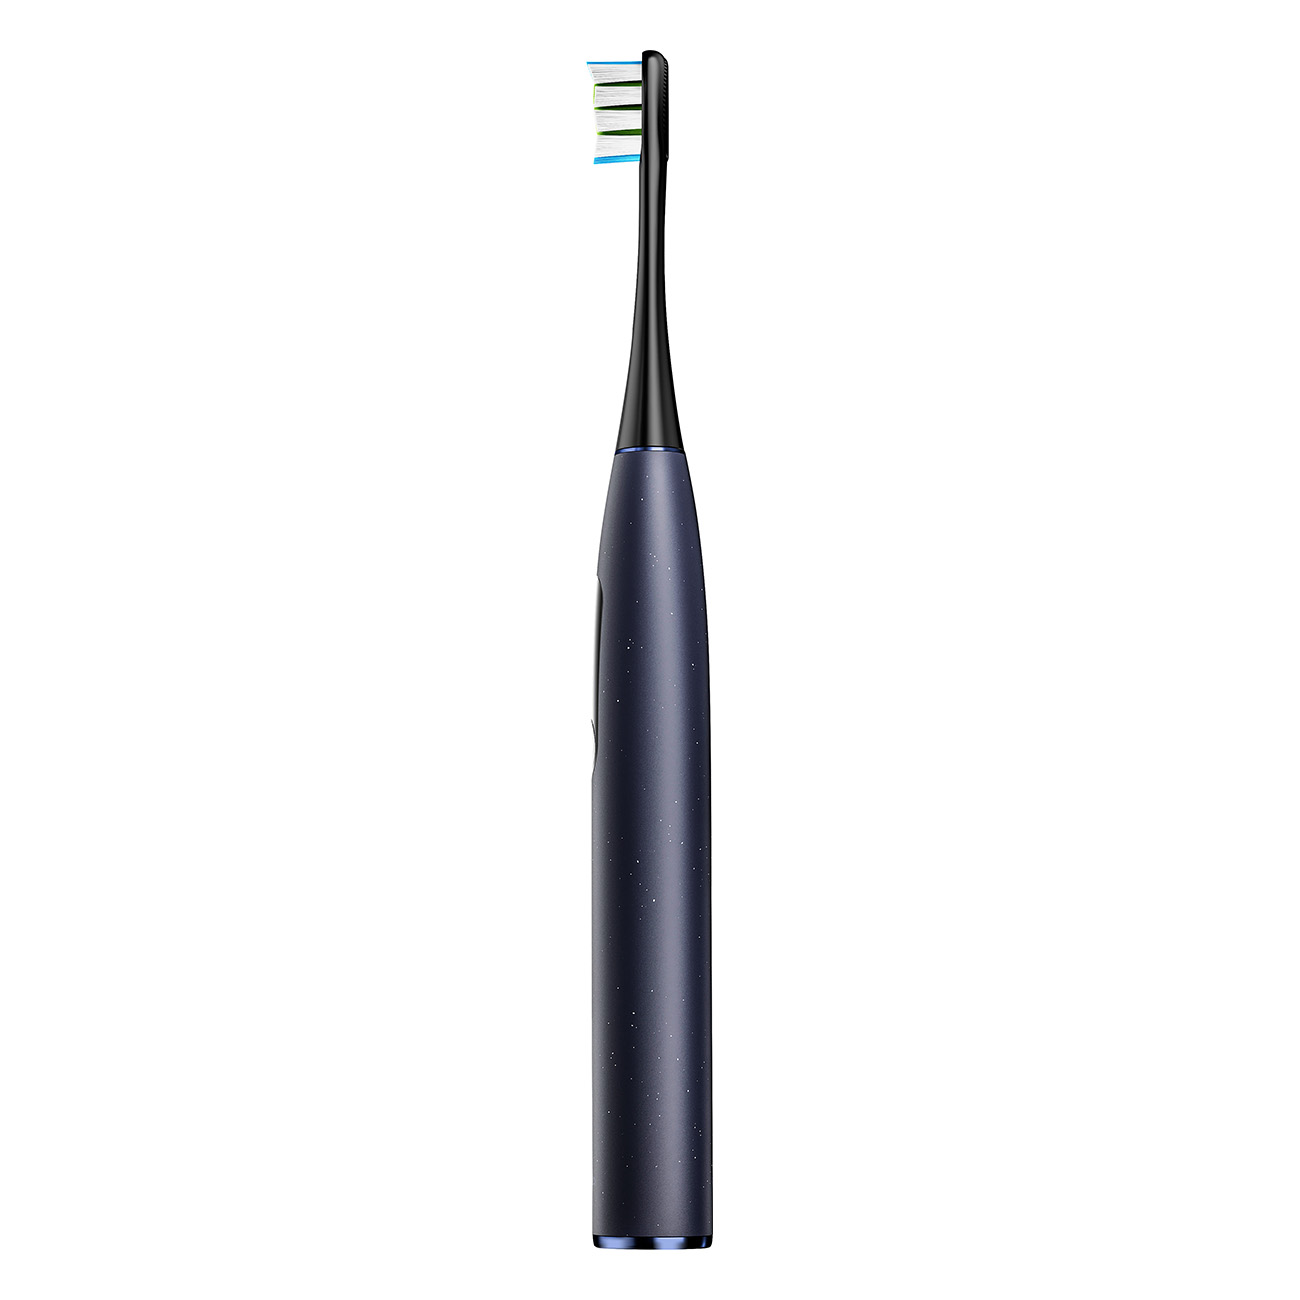 Pro Digital OCLEAN Elektrische X Electric blau Toothbrush Zahnbürste